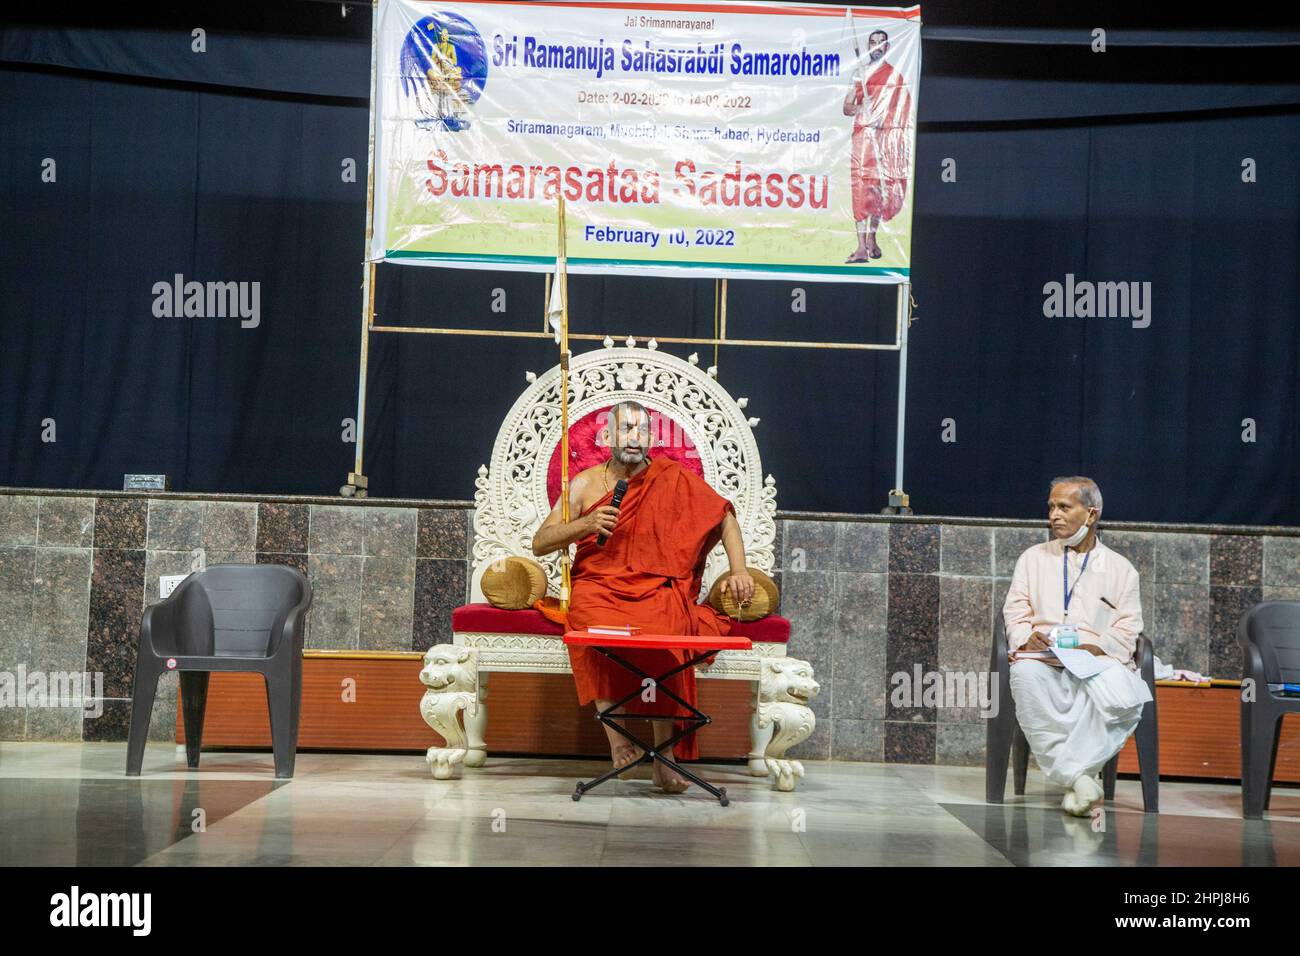 Cérémonie de dédicace de la statue de l'égalité de Ramanuja, Chinna Jeeyar Swamy Speaking, Hyderabad, Telengana, Inde Banque D'Images